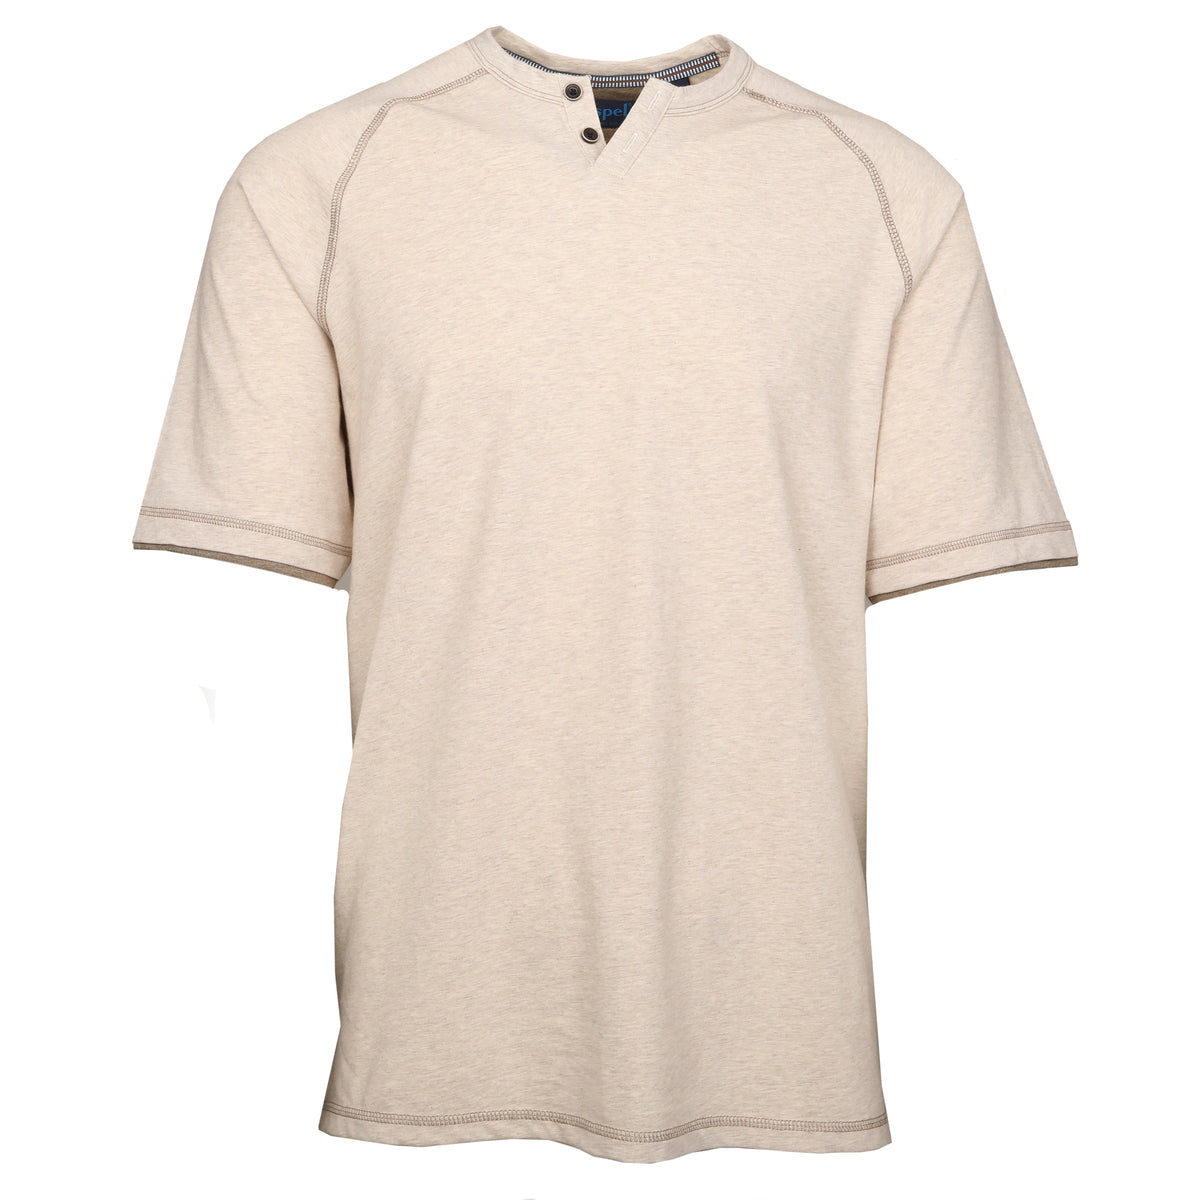 King Notch Neck T-Shirt - Short Sleeve Sand